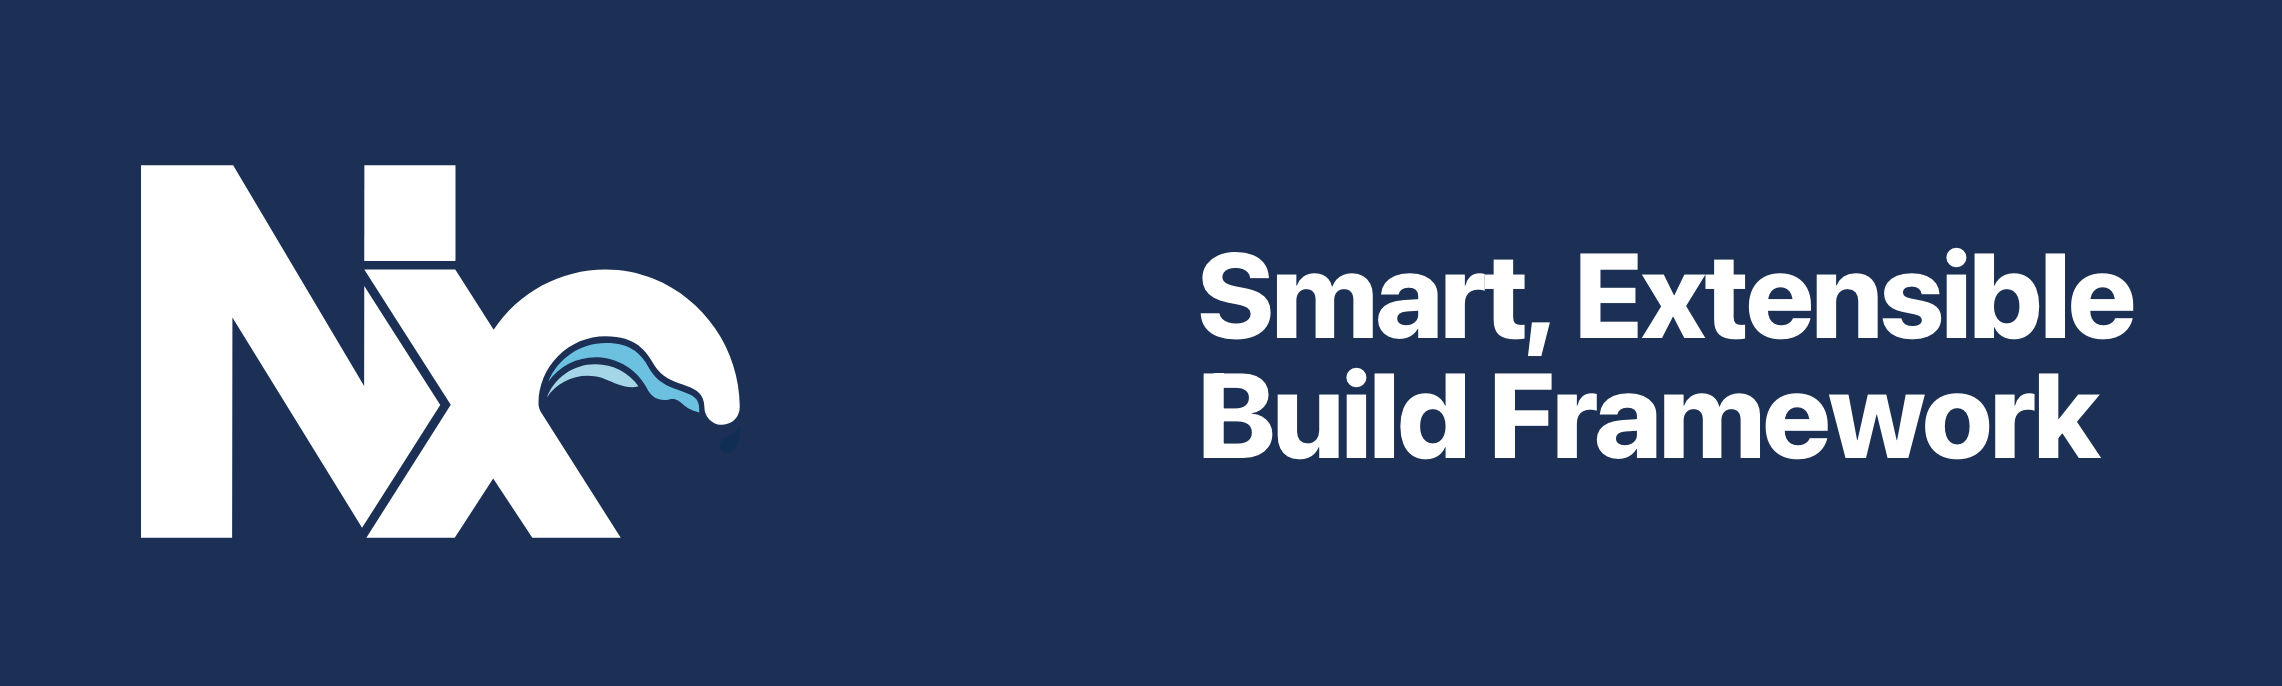 Nx - Smart, Extensible Build Framework